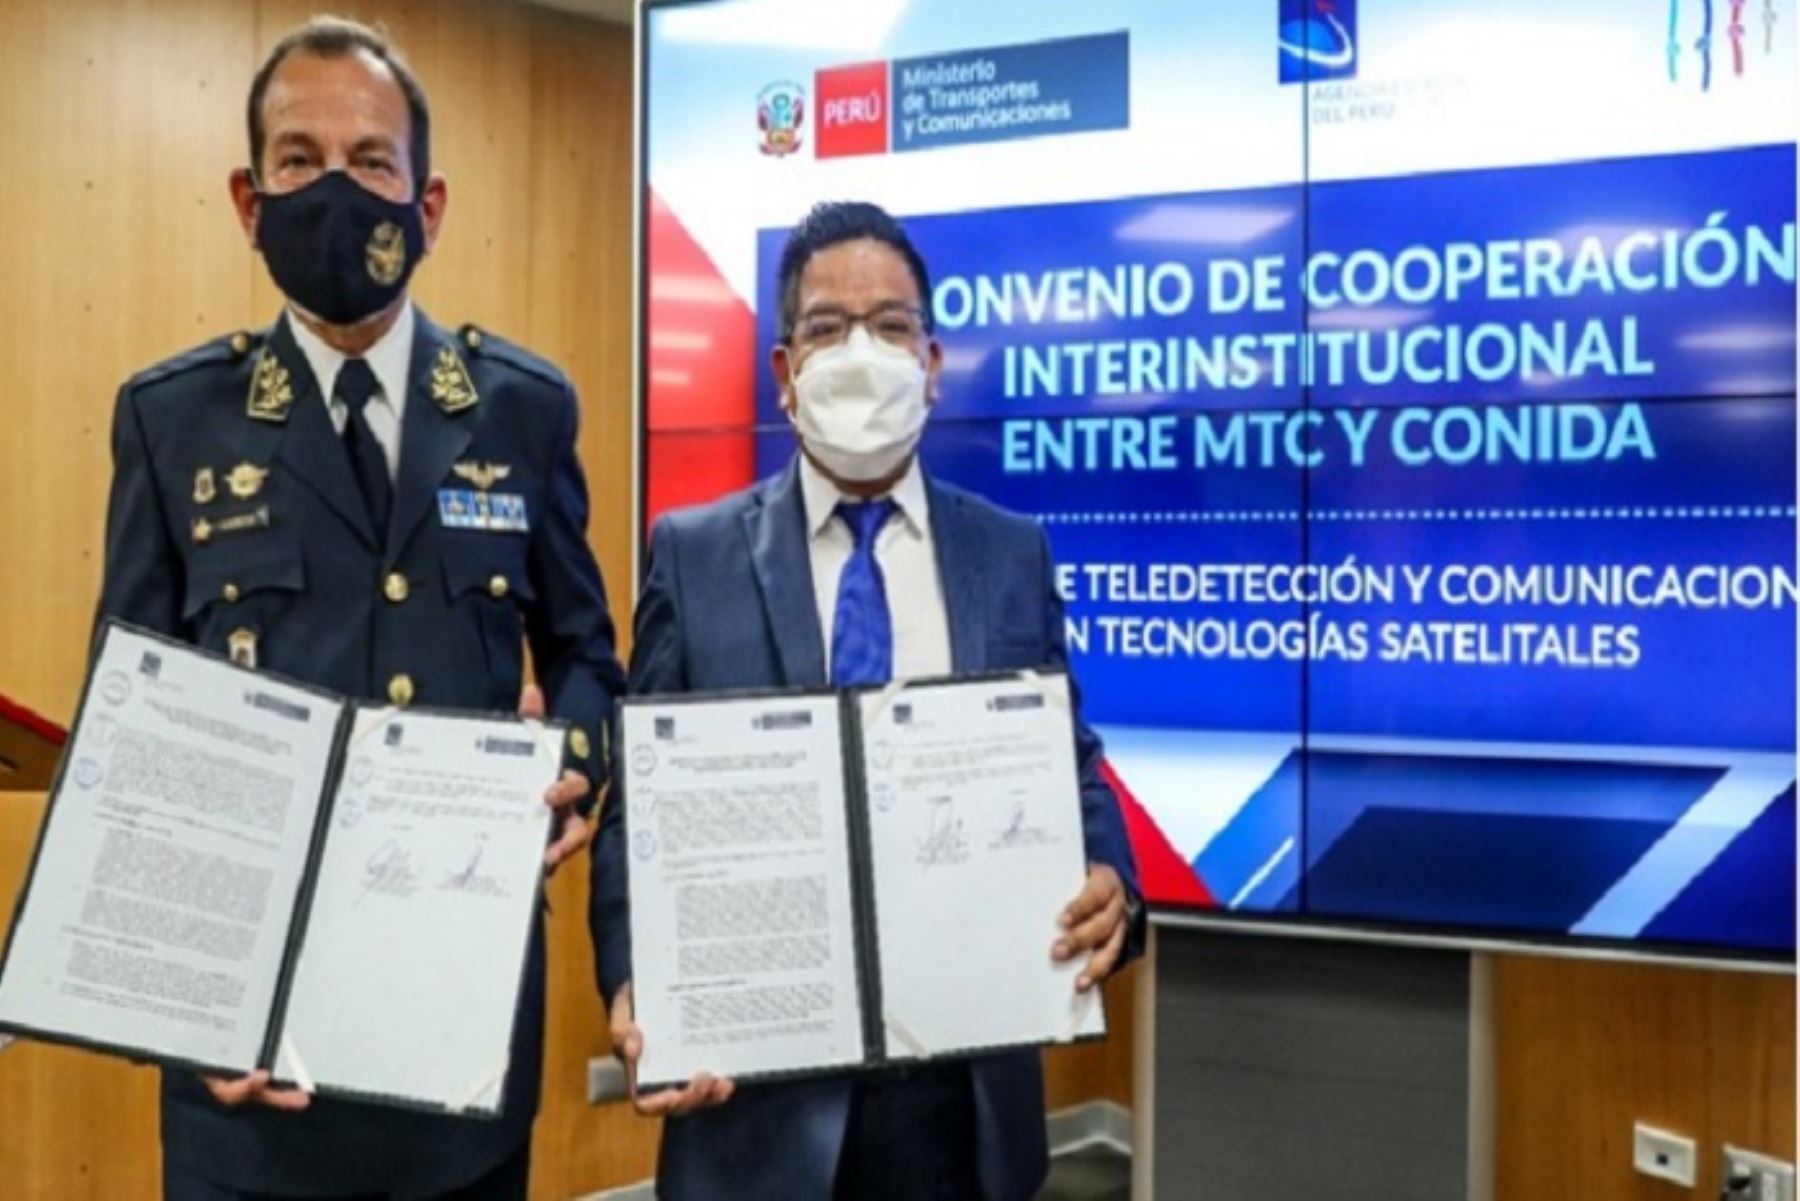 El convenio fue suscrito en la sede central del MTC, entre el viceministro Chura y el mayor general FAP, José Antonio García Morgan, jefe institucional de Conida.